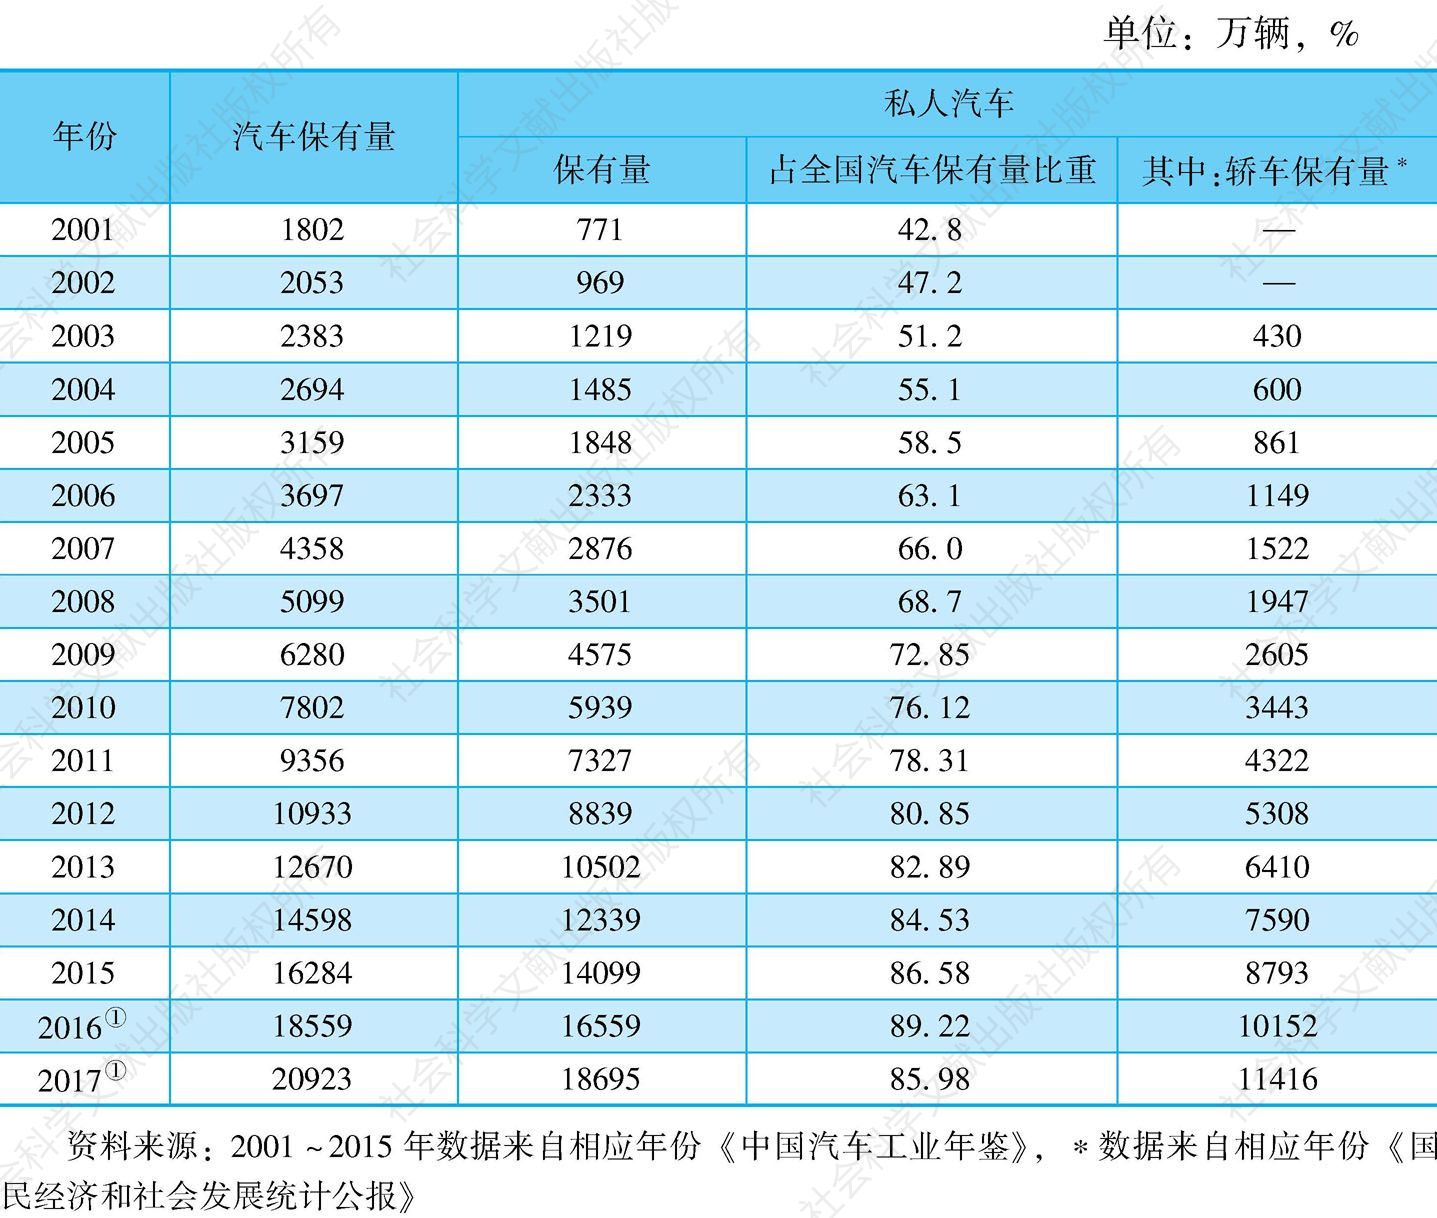 表5 2001～2017年中国民用汽车保有量